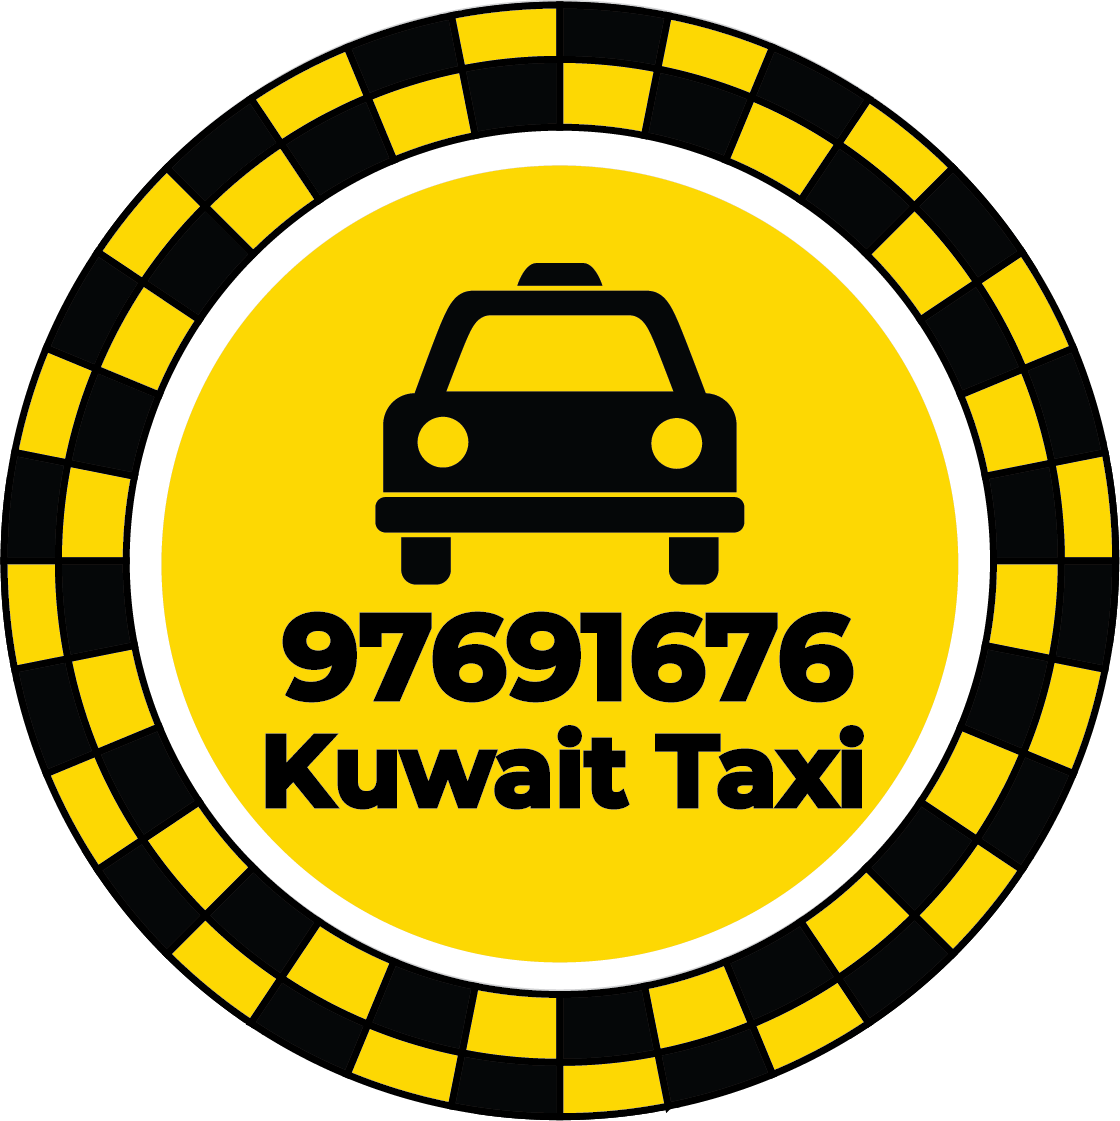 Fahaheel Taxi 97691676 - Fahaheel Taxi Number